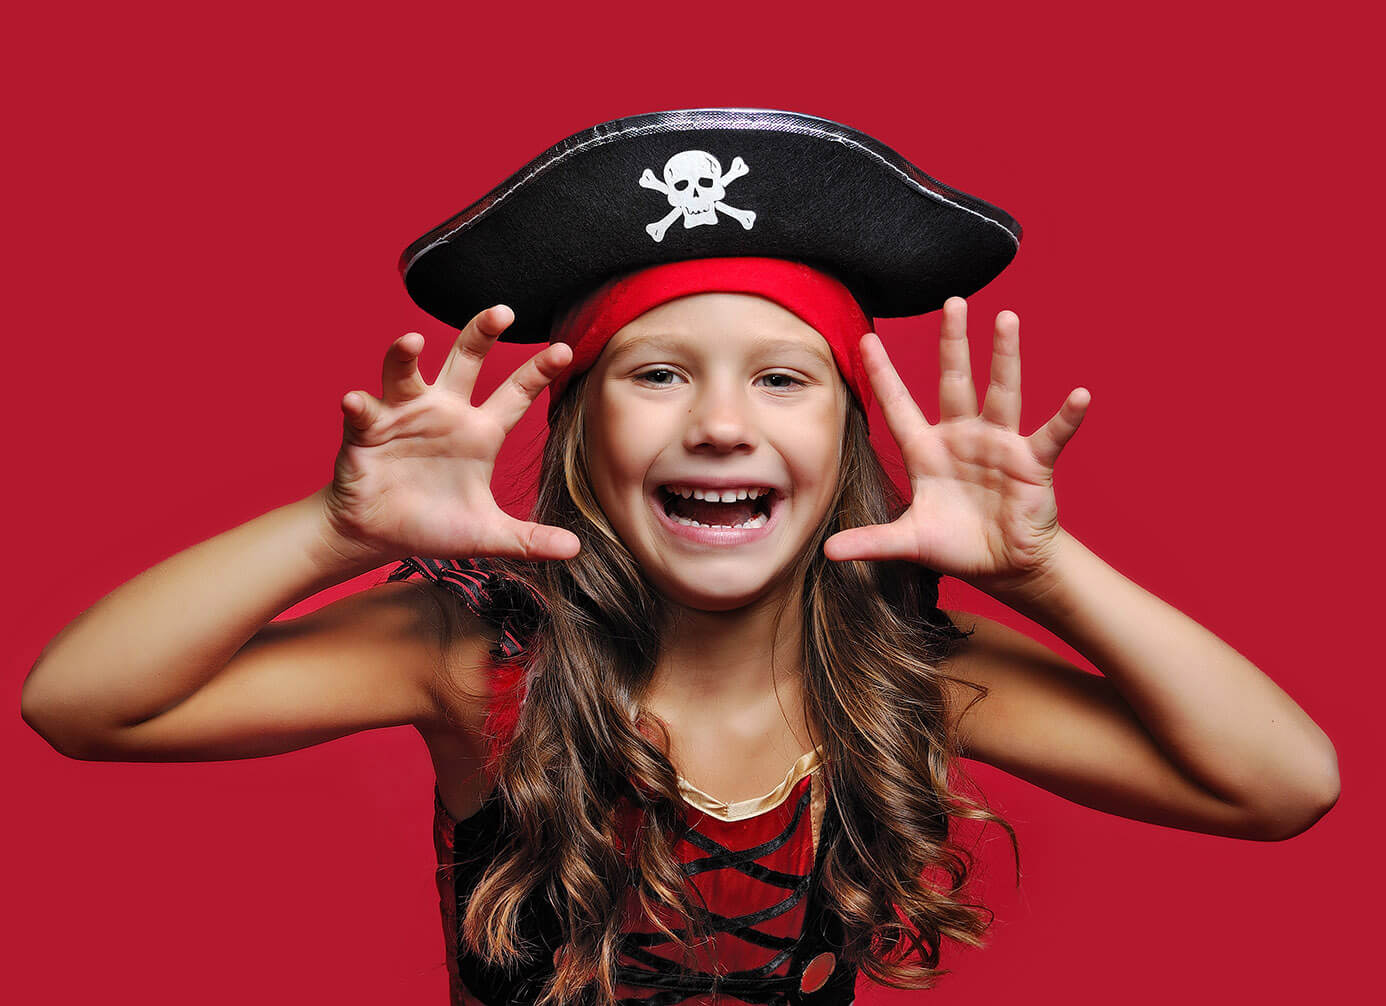 Maedchen im Piratenoutfit warnt vor billigen Zahnschienen aus dem Internet